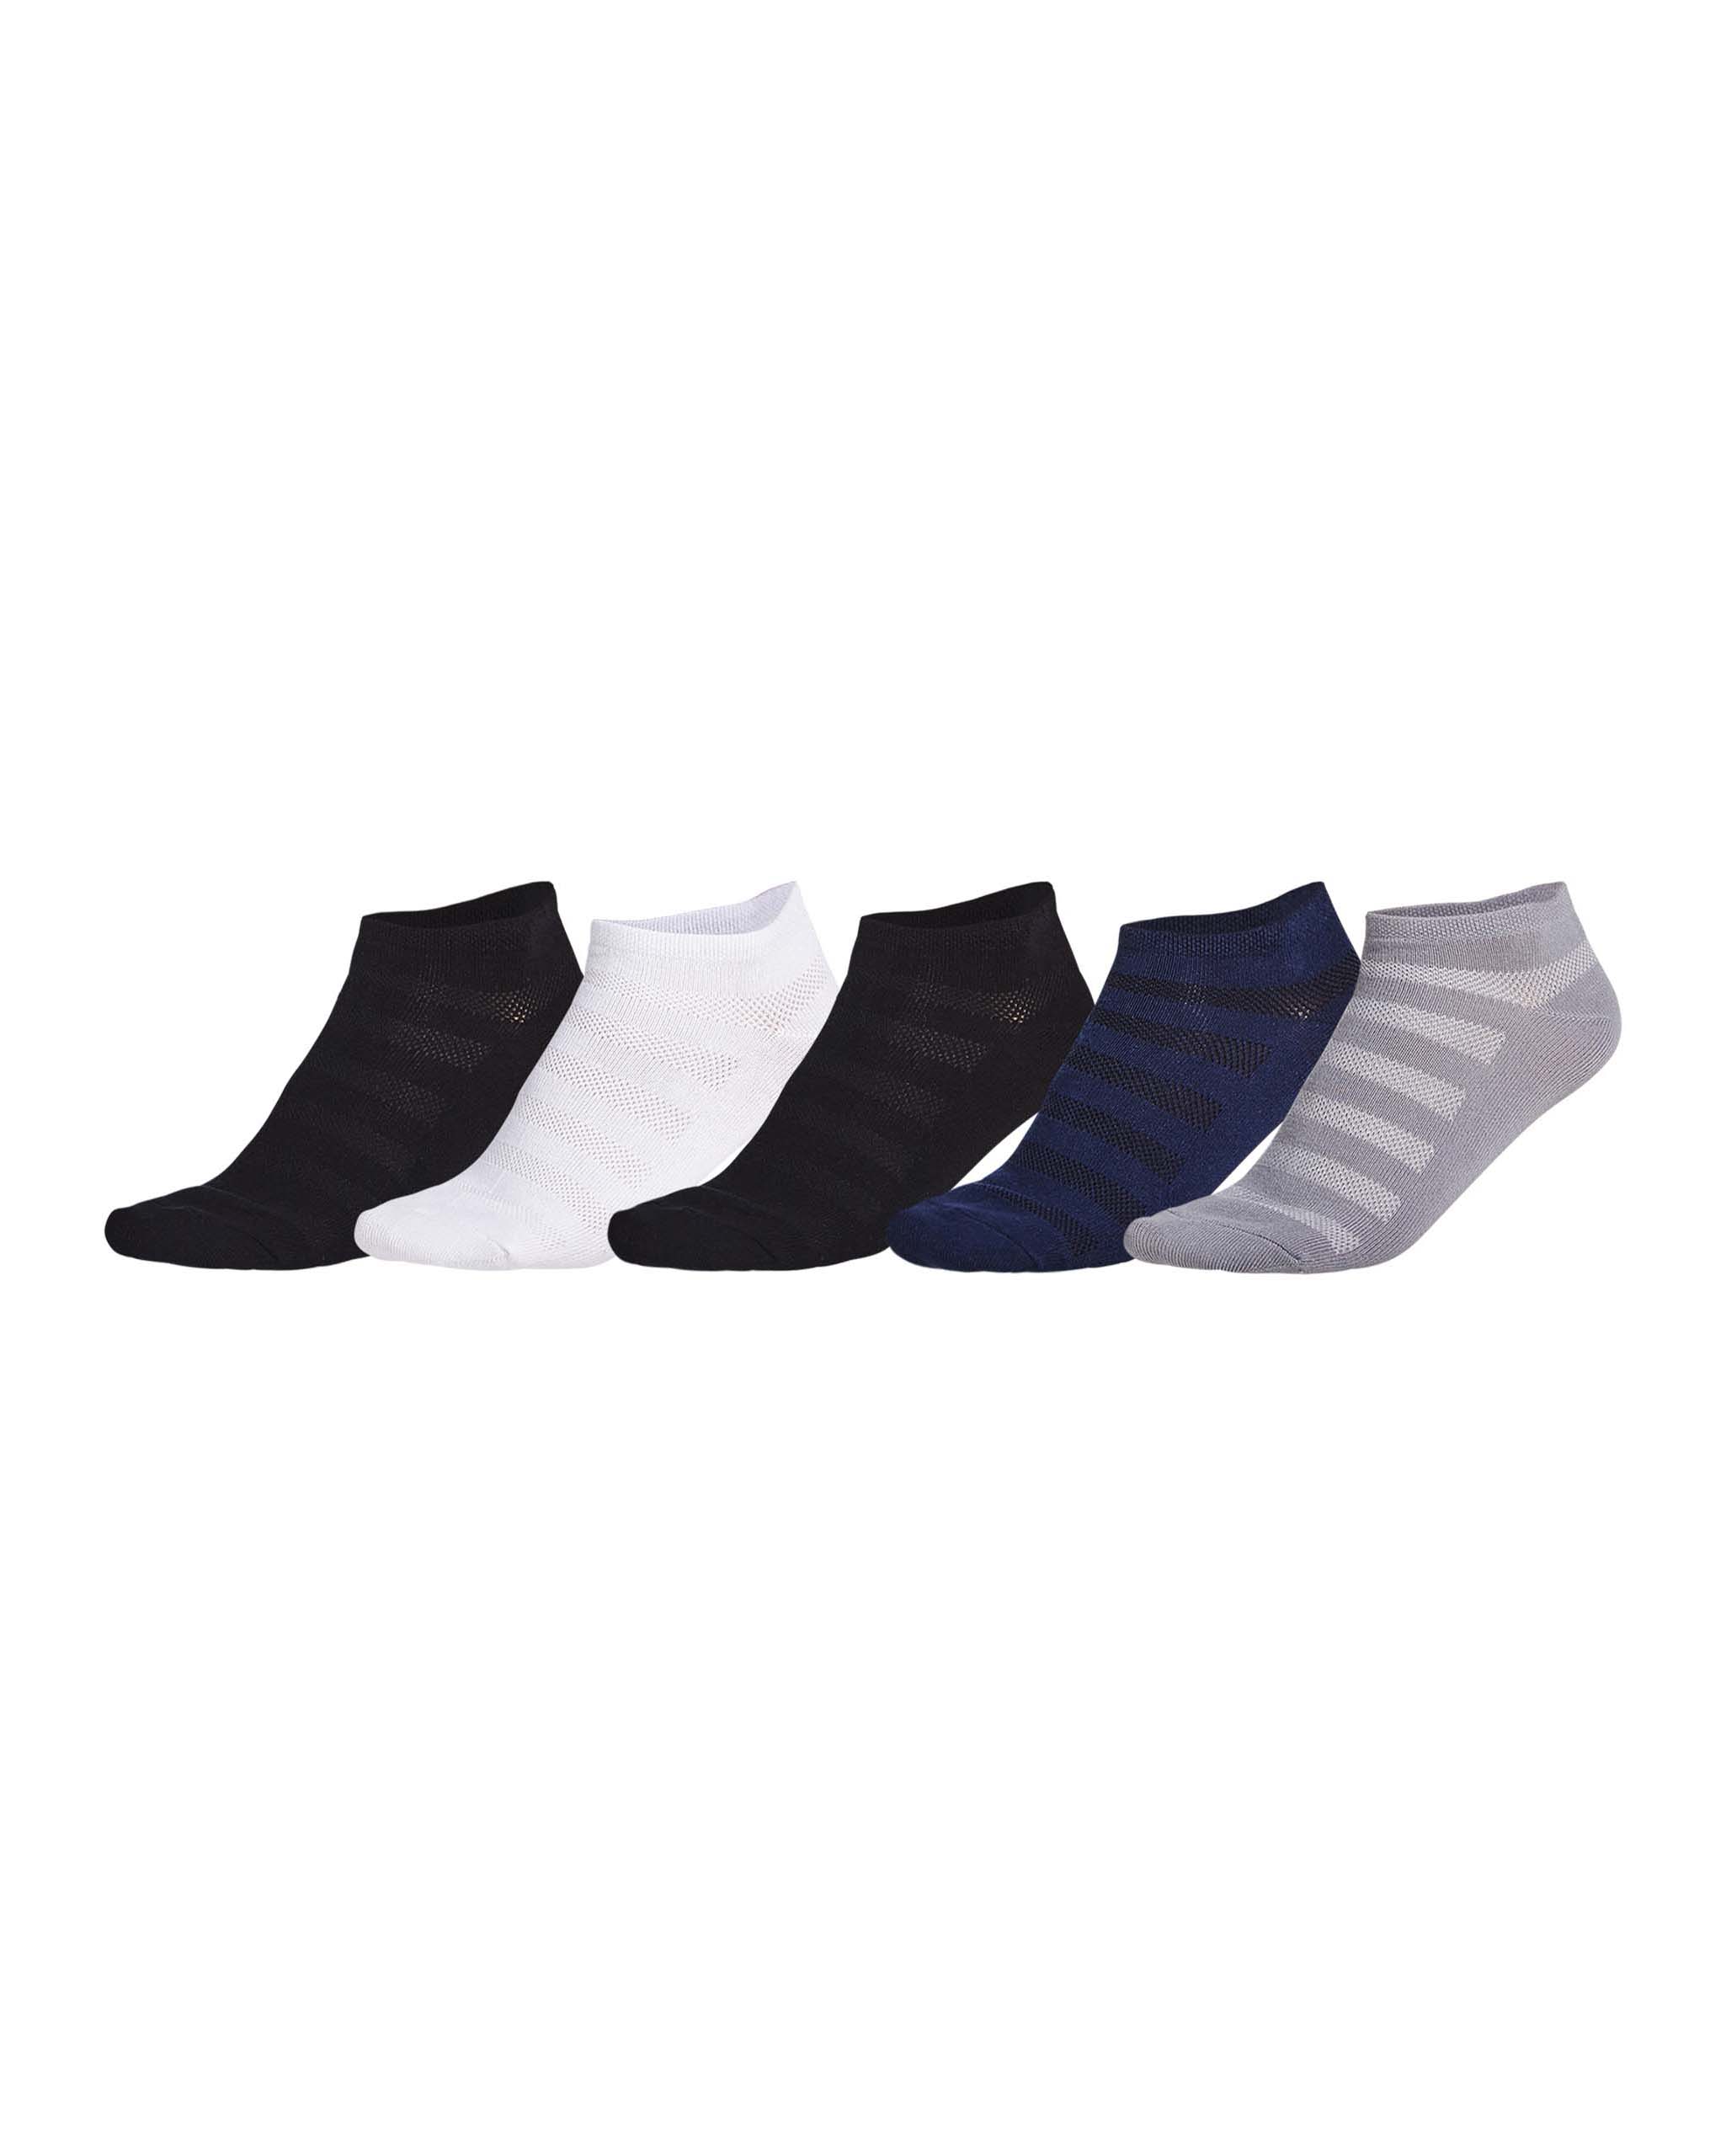 Röhnisch 5-Pack Socks - Black/White